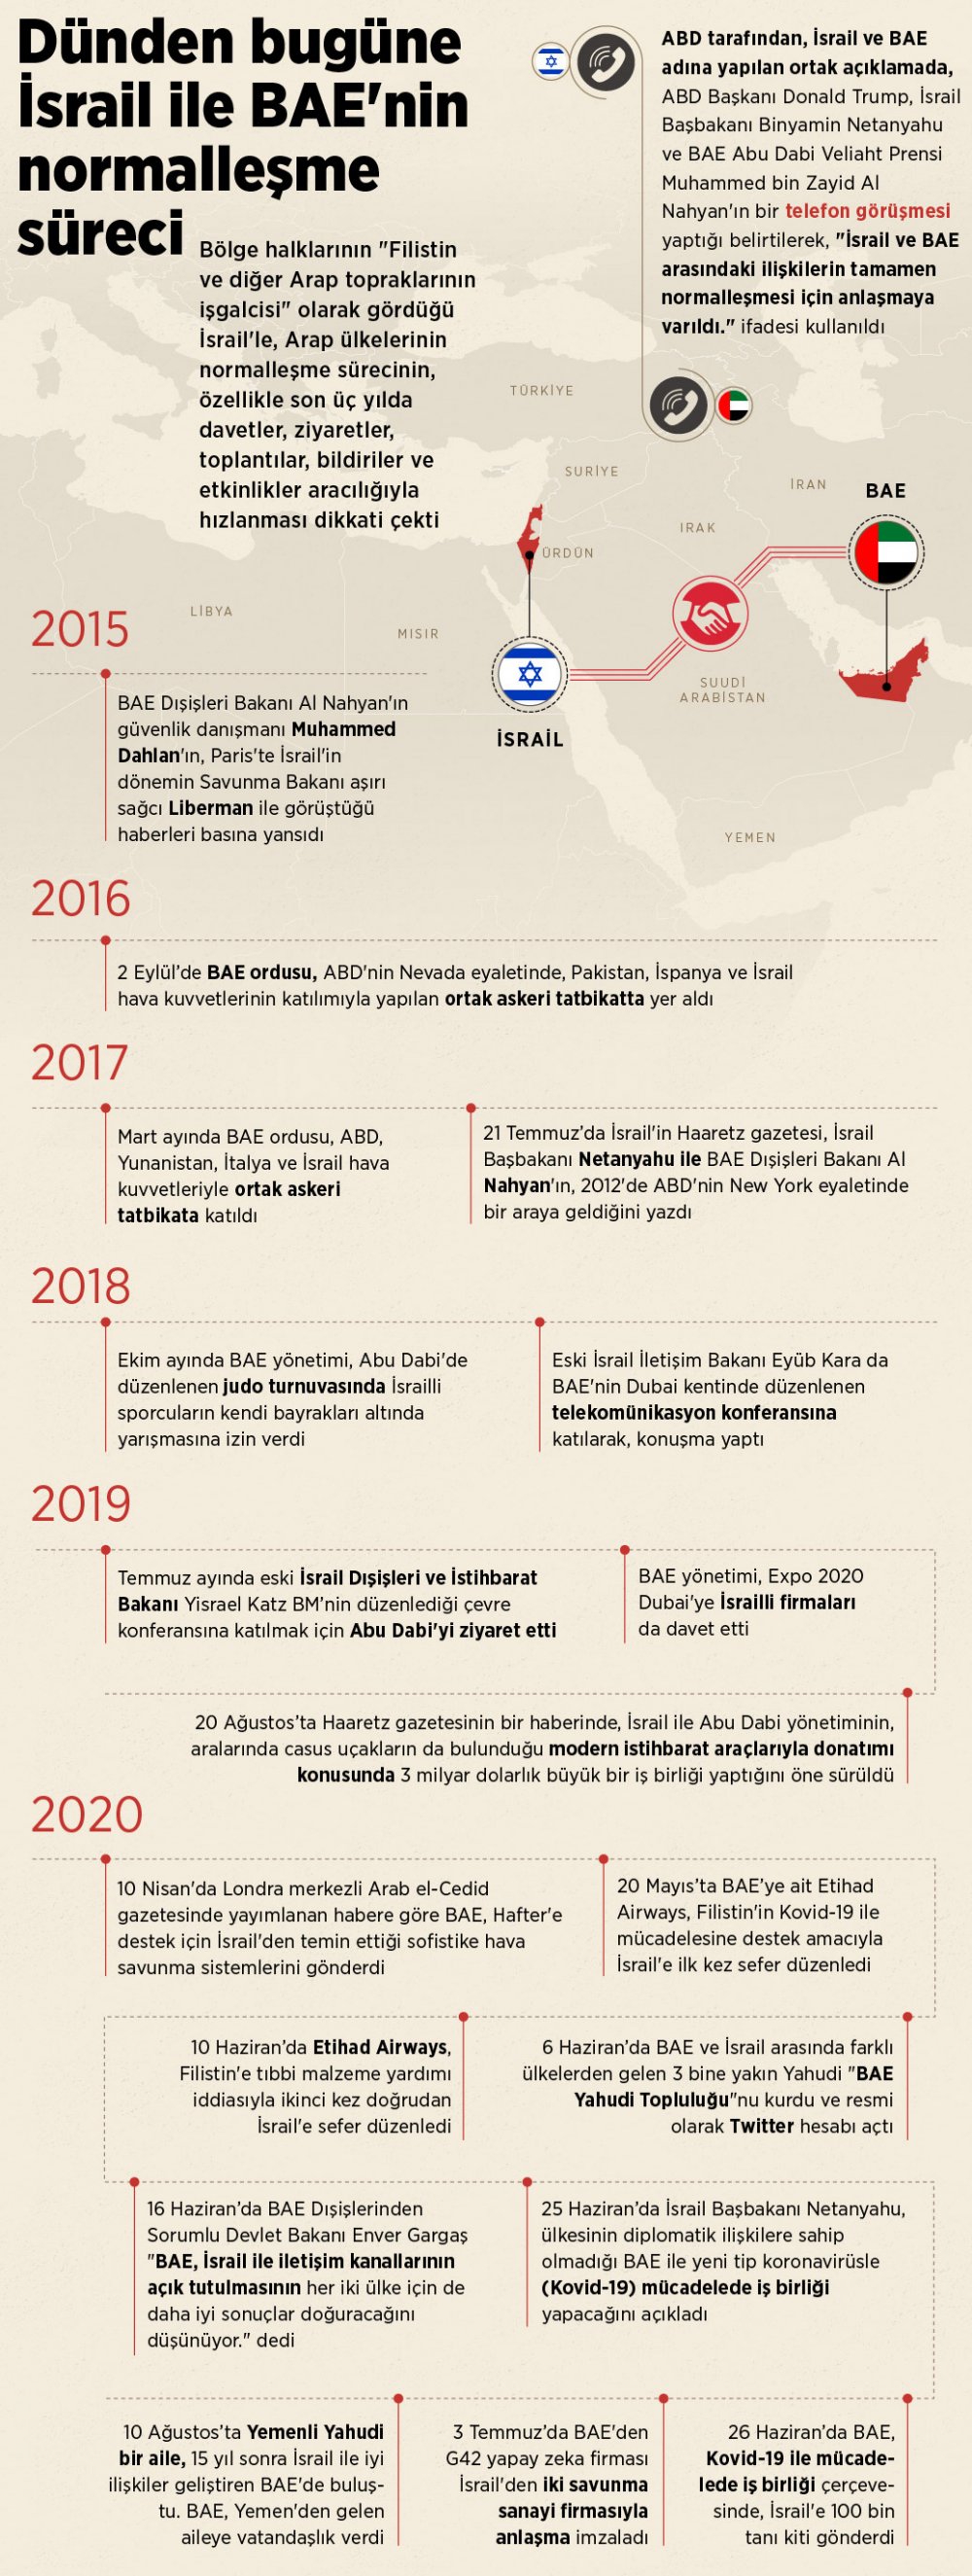 İsrail-BAE ilişkilerinin tarihi süreci